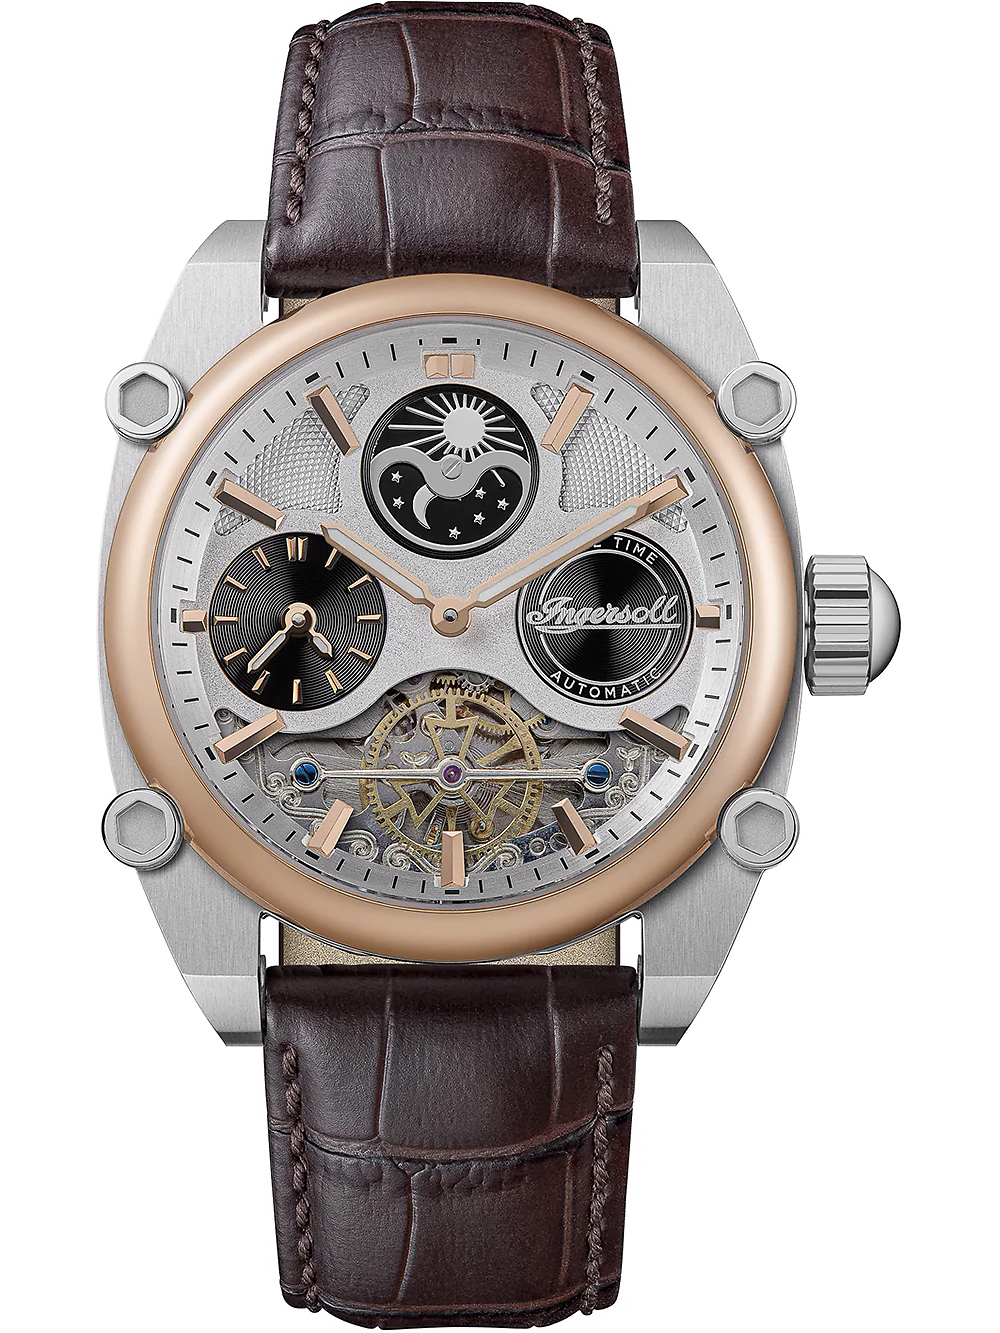 Pánské hodinky Ingersoll I15401 Mens Watch Varsity Dual Time Automatic 45mm 5ATM